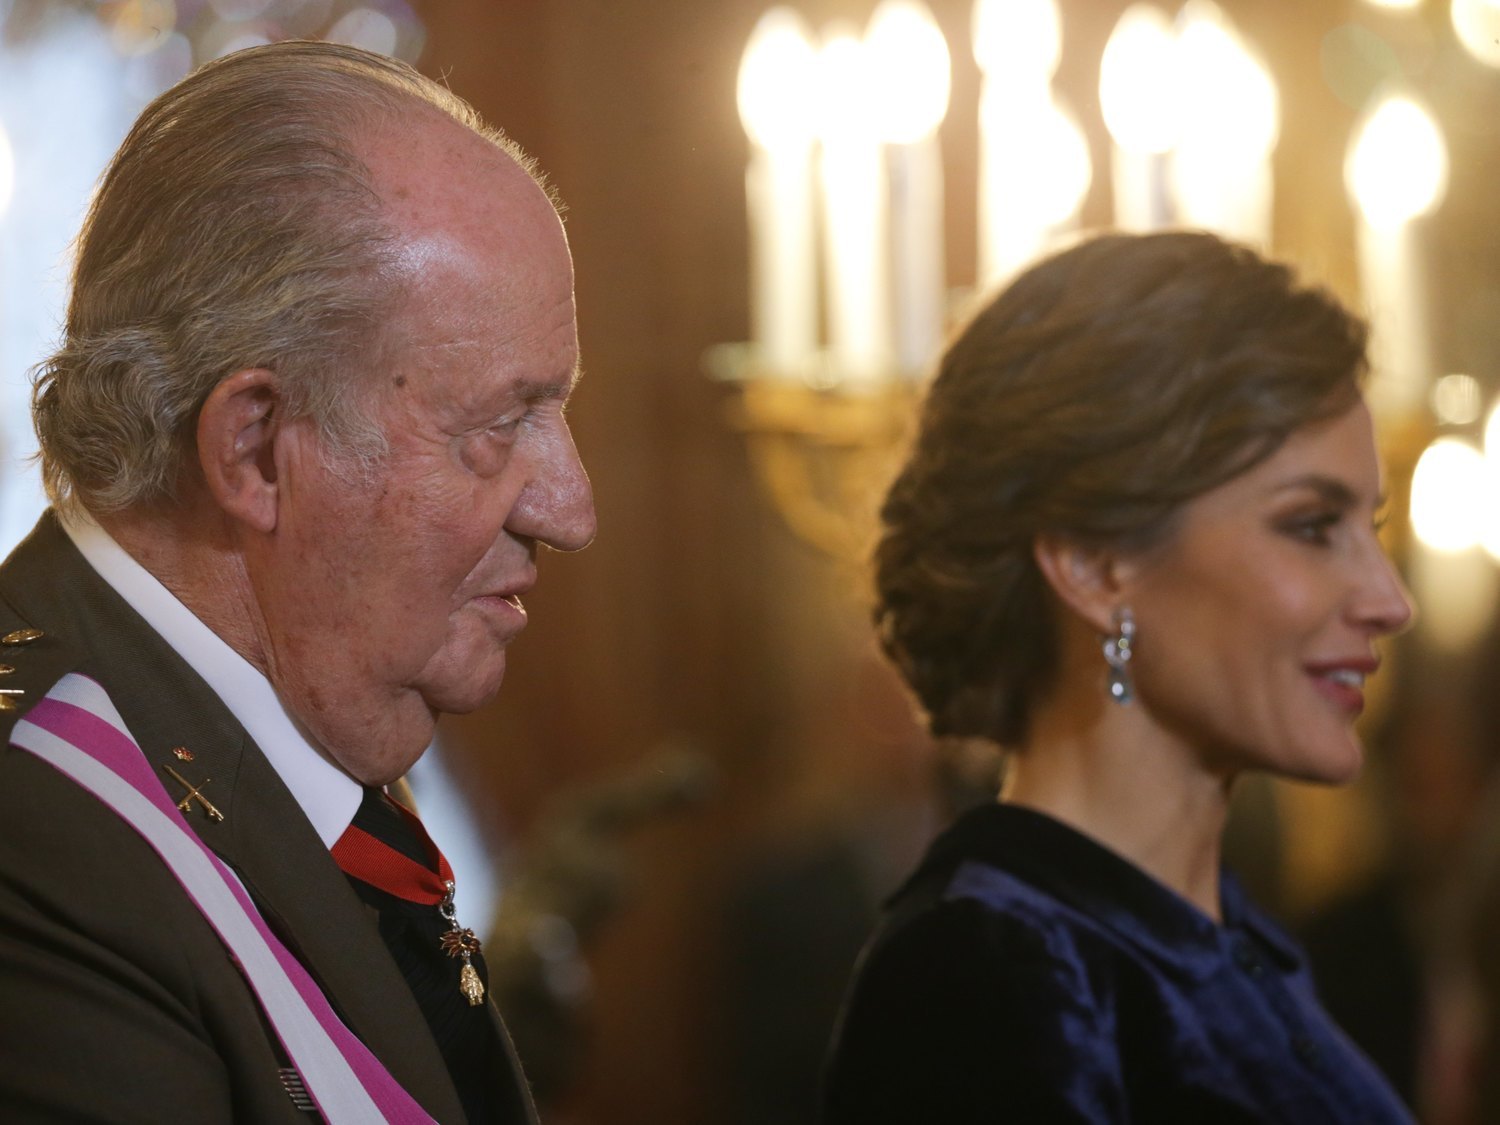 La venganza de la reina Letizia hacia el emérito rey Juan Carlos tras sus humillaciones, según la prensa extranjera